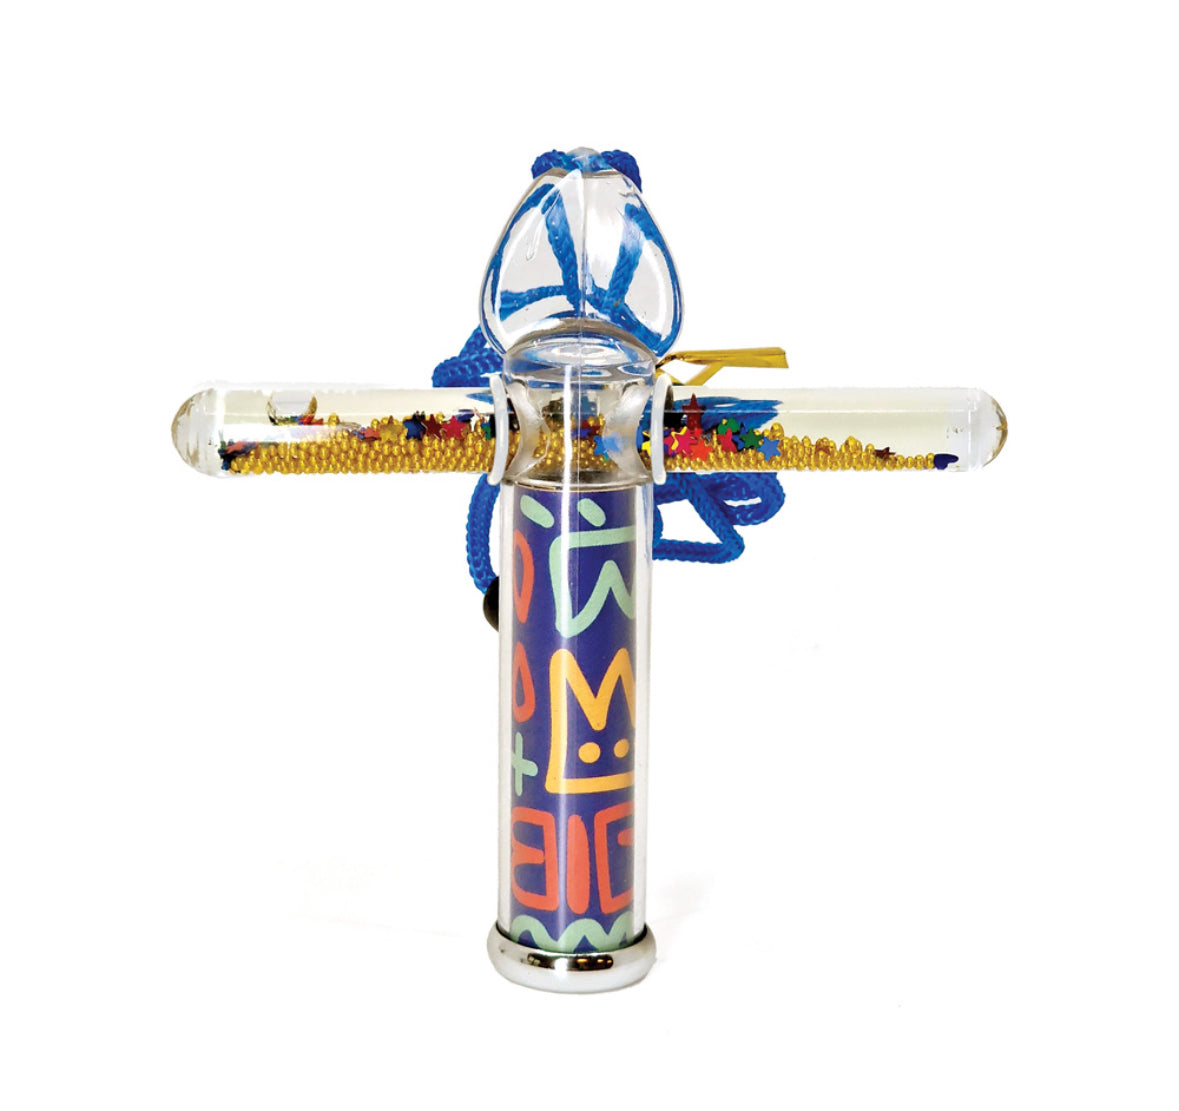 Mini Liquid Stick Kaleidoscope Joyful Scribbles 'Multicolor' 10 cm